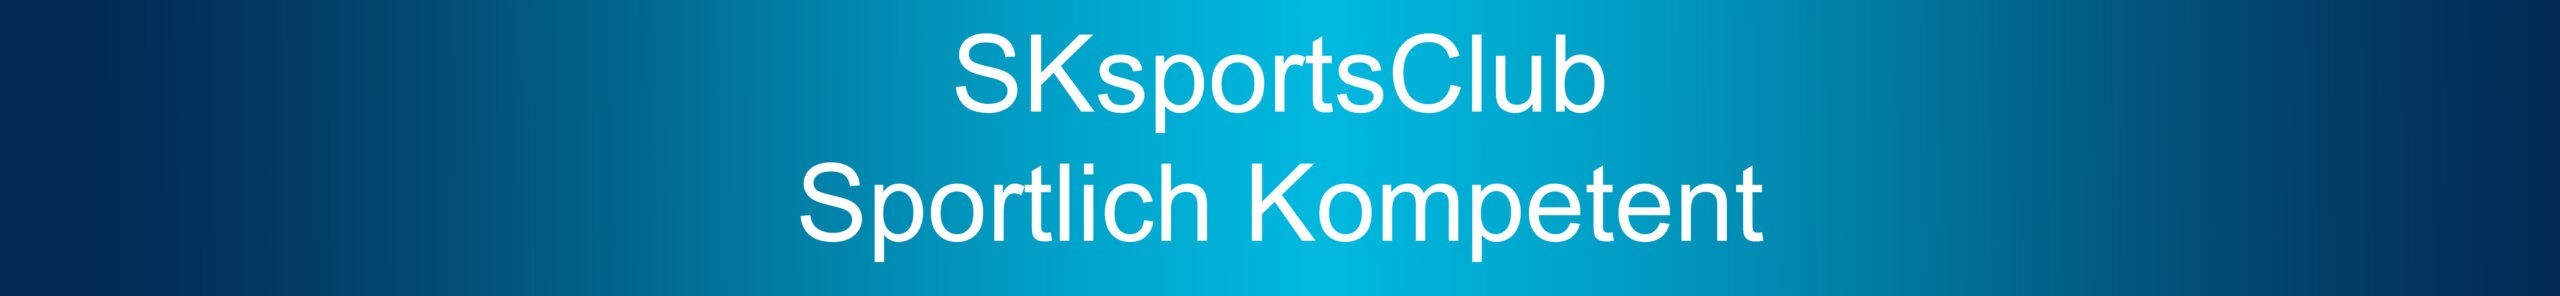 SKsportsClub - sportlich kompetent